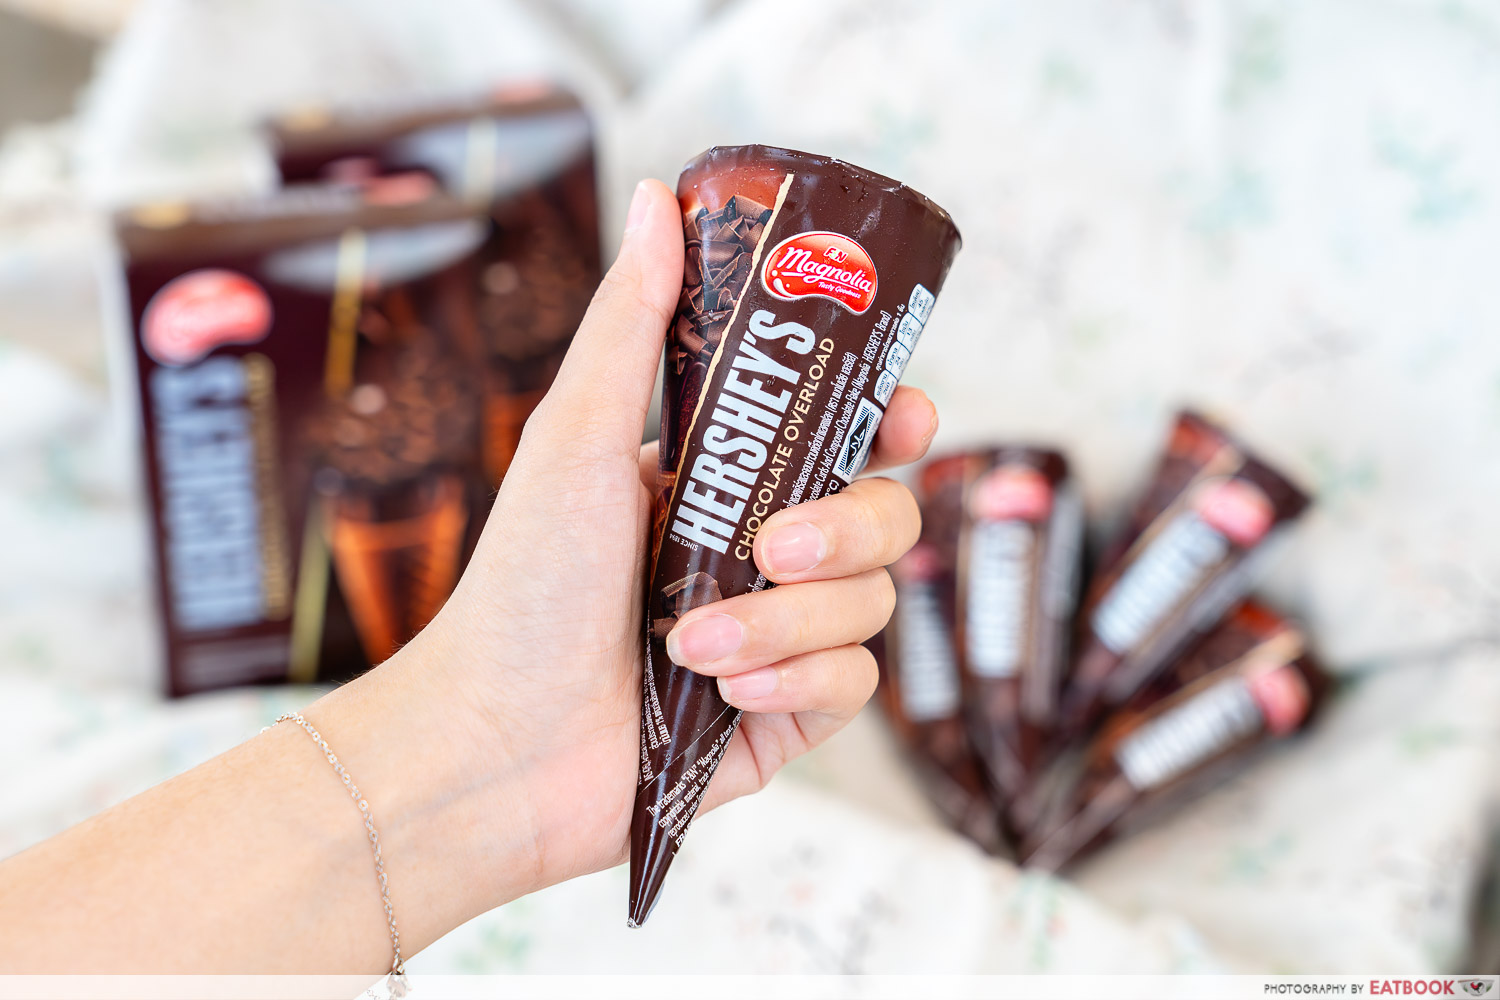 Magnolia Hershey’s Chocolate Overload Cone